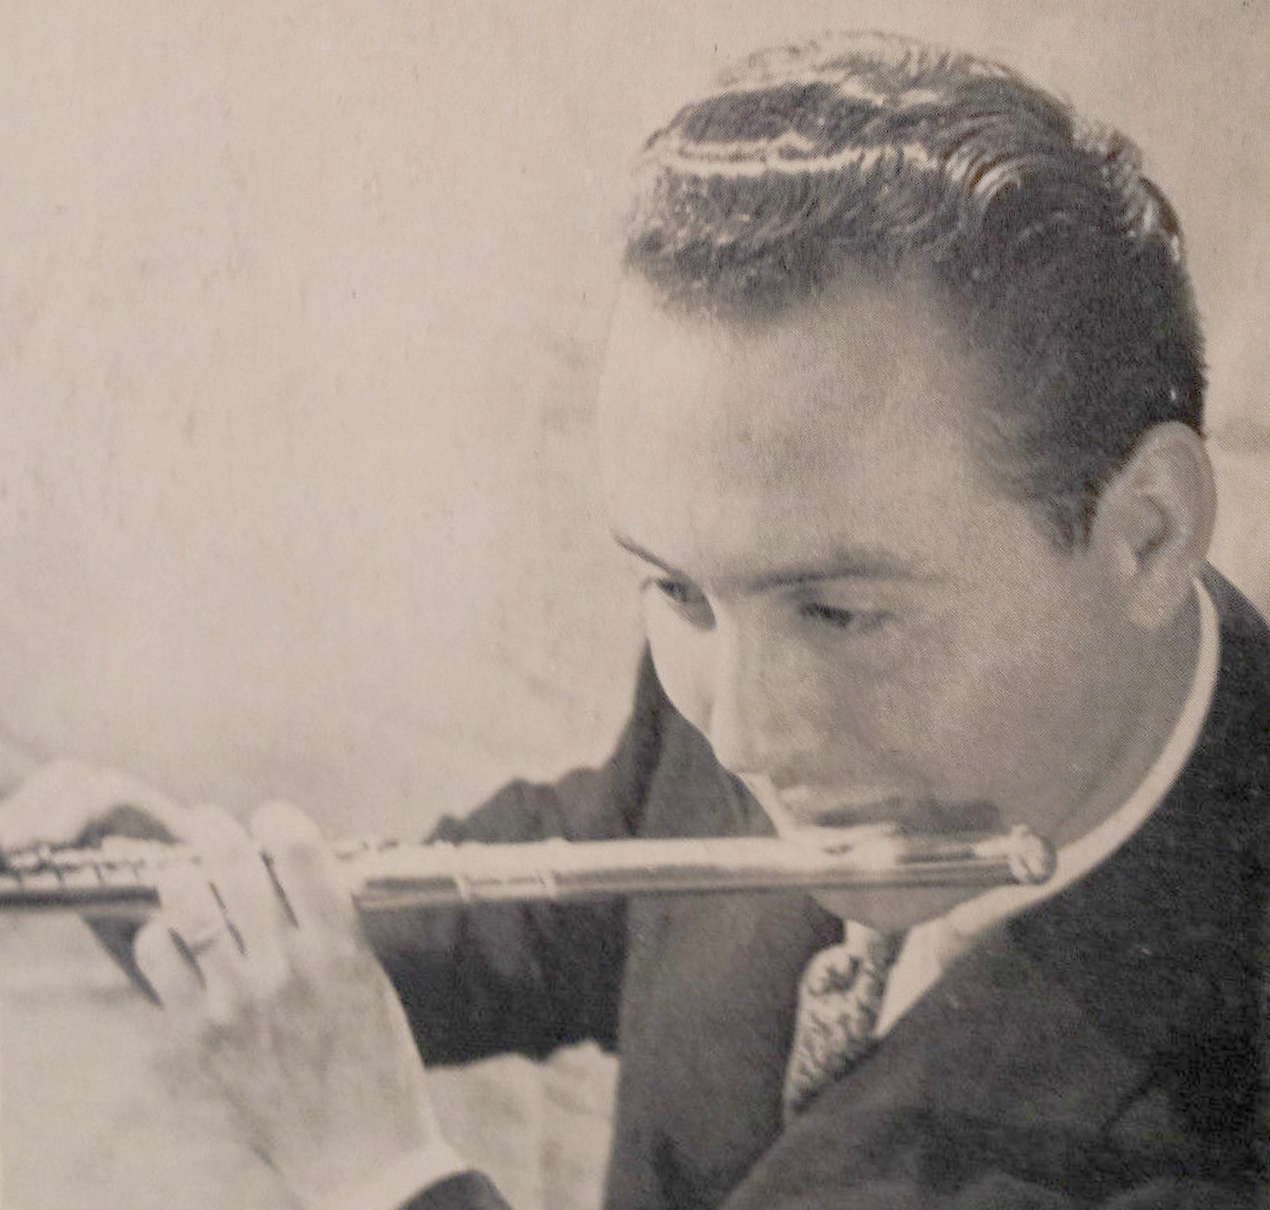 Le jeune Jean-Pierre RAMPAL vers 1953, une photo publiée au verso du disque Educo ECM 4001 - Cliquer sur la photo pour une vue agrandie et les références